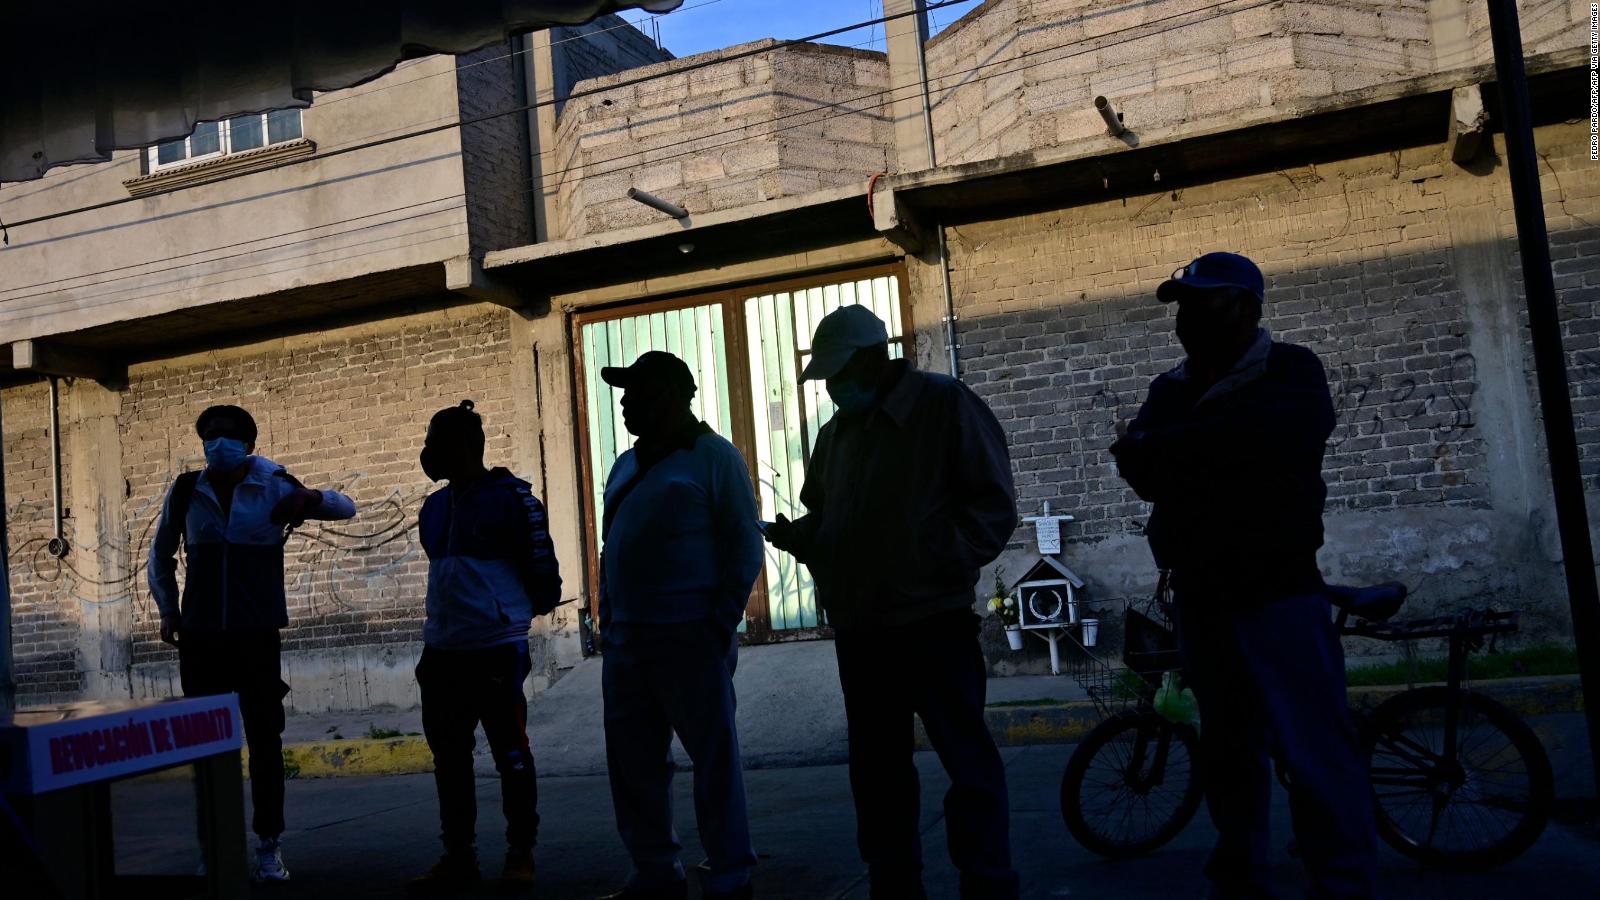 Hombres entre 15 y 40 años son los más desaparecidos en México, según la ONU